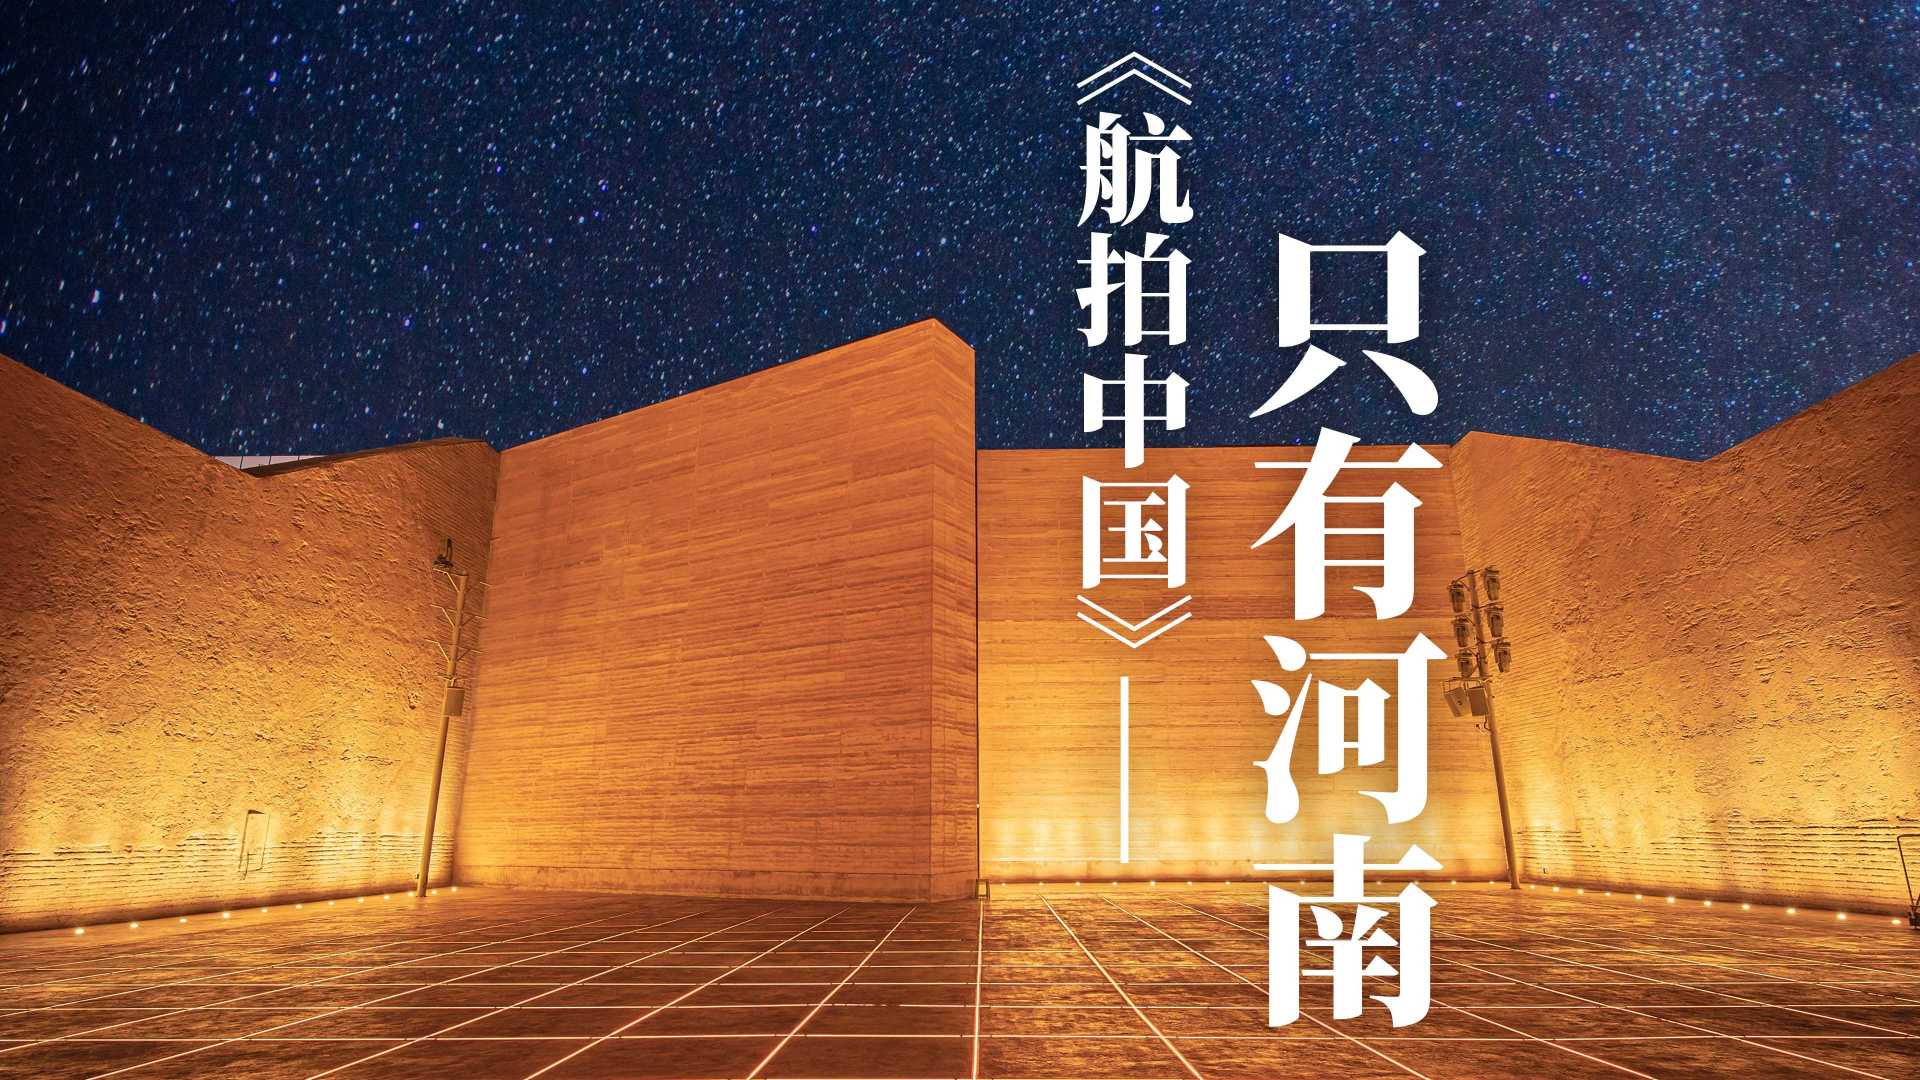 中国最大戏剧聚落群——《只有河南·戏剧幻城》将于6月6日开城迎客-大河报网